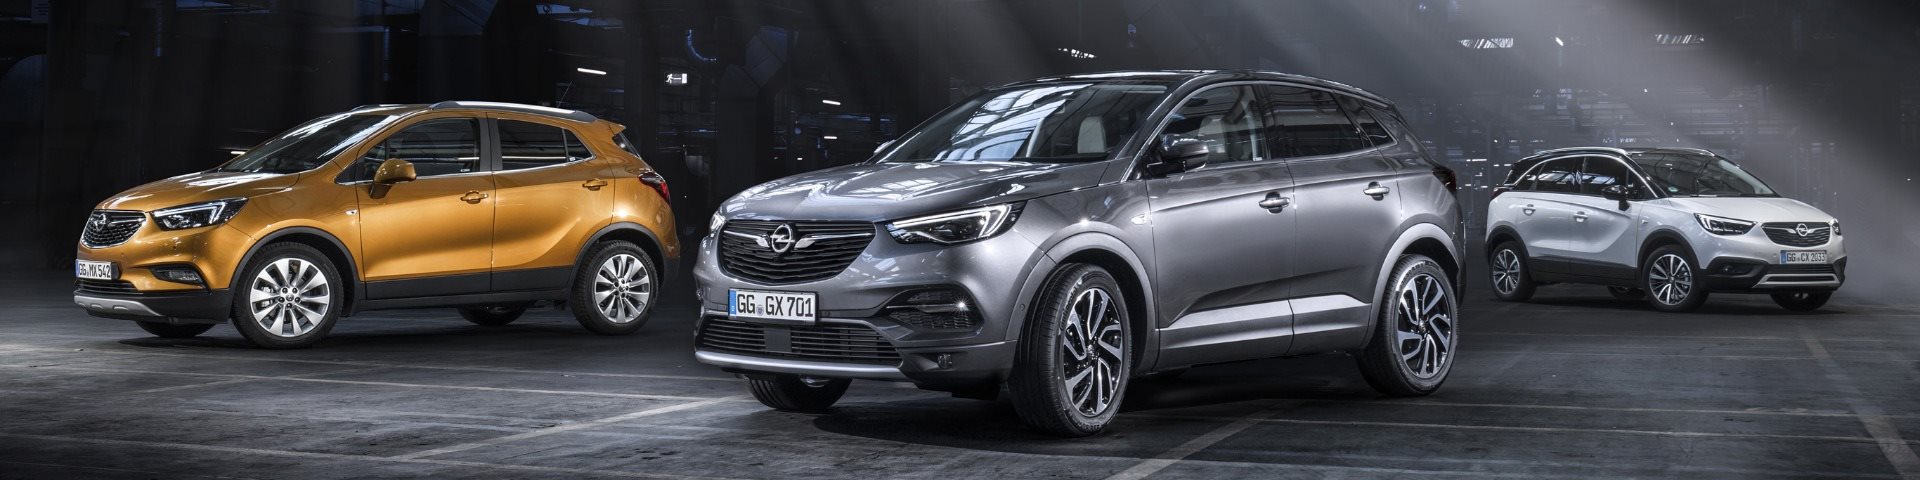 Lp Opel Carros Usados Serviço